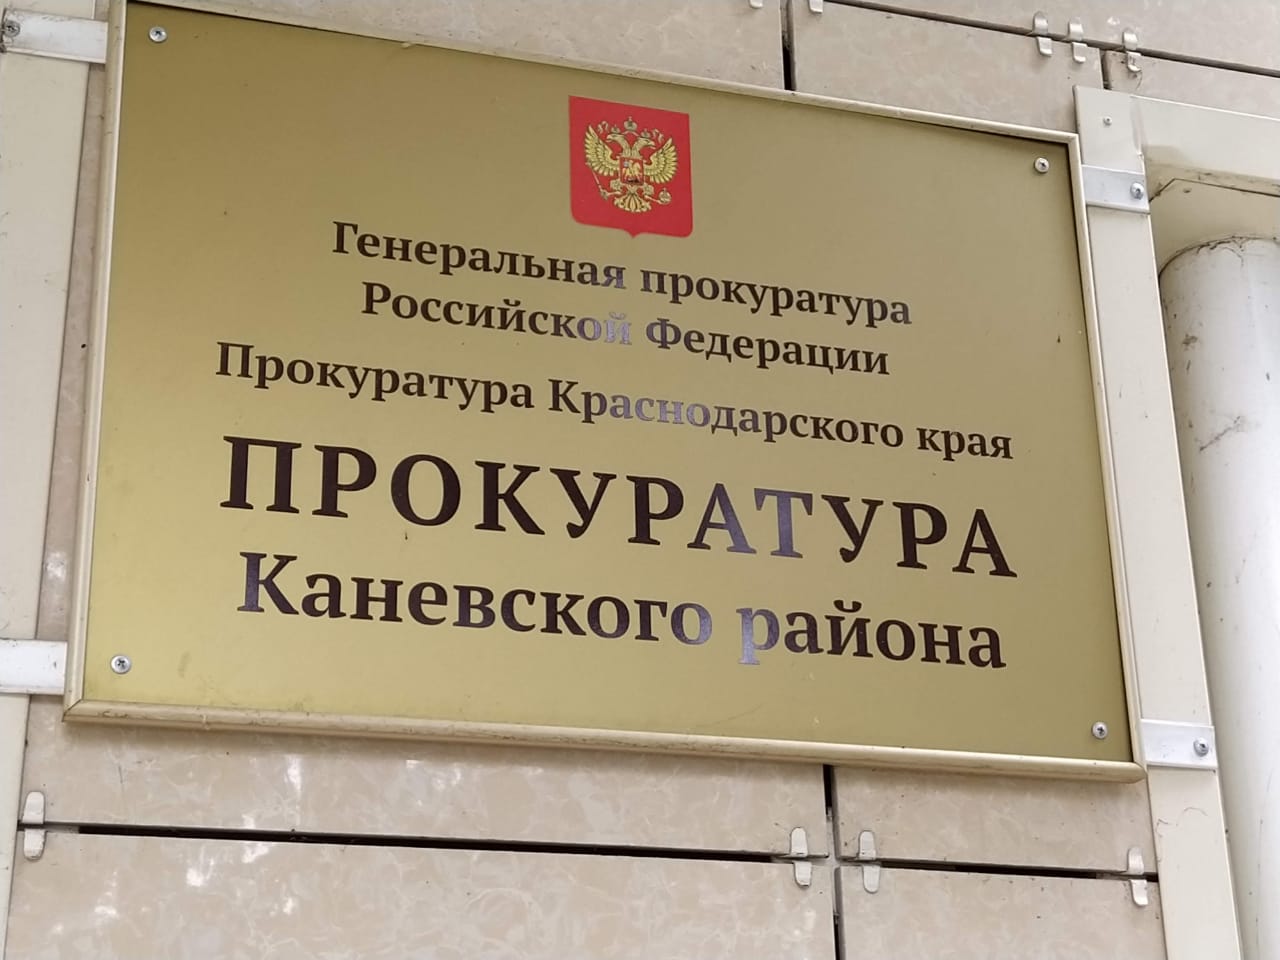 Прокурор Каневского района провел дистанционный личный прием граждан Стародеревянковского сельского поселения